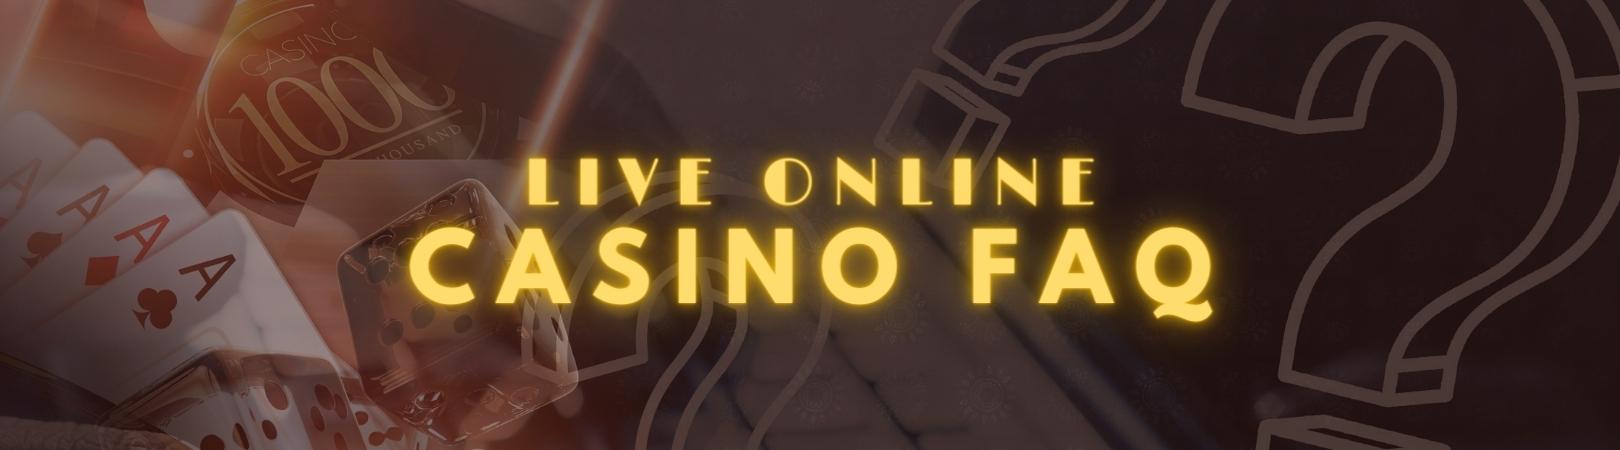 Live online casino FAQ img